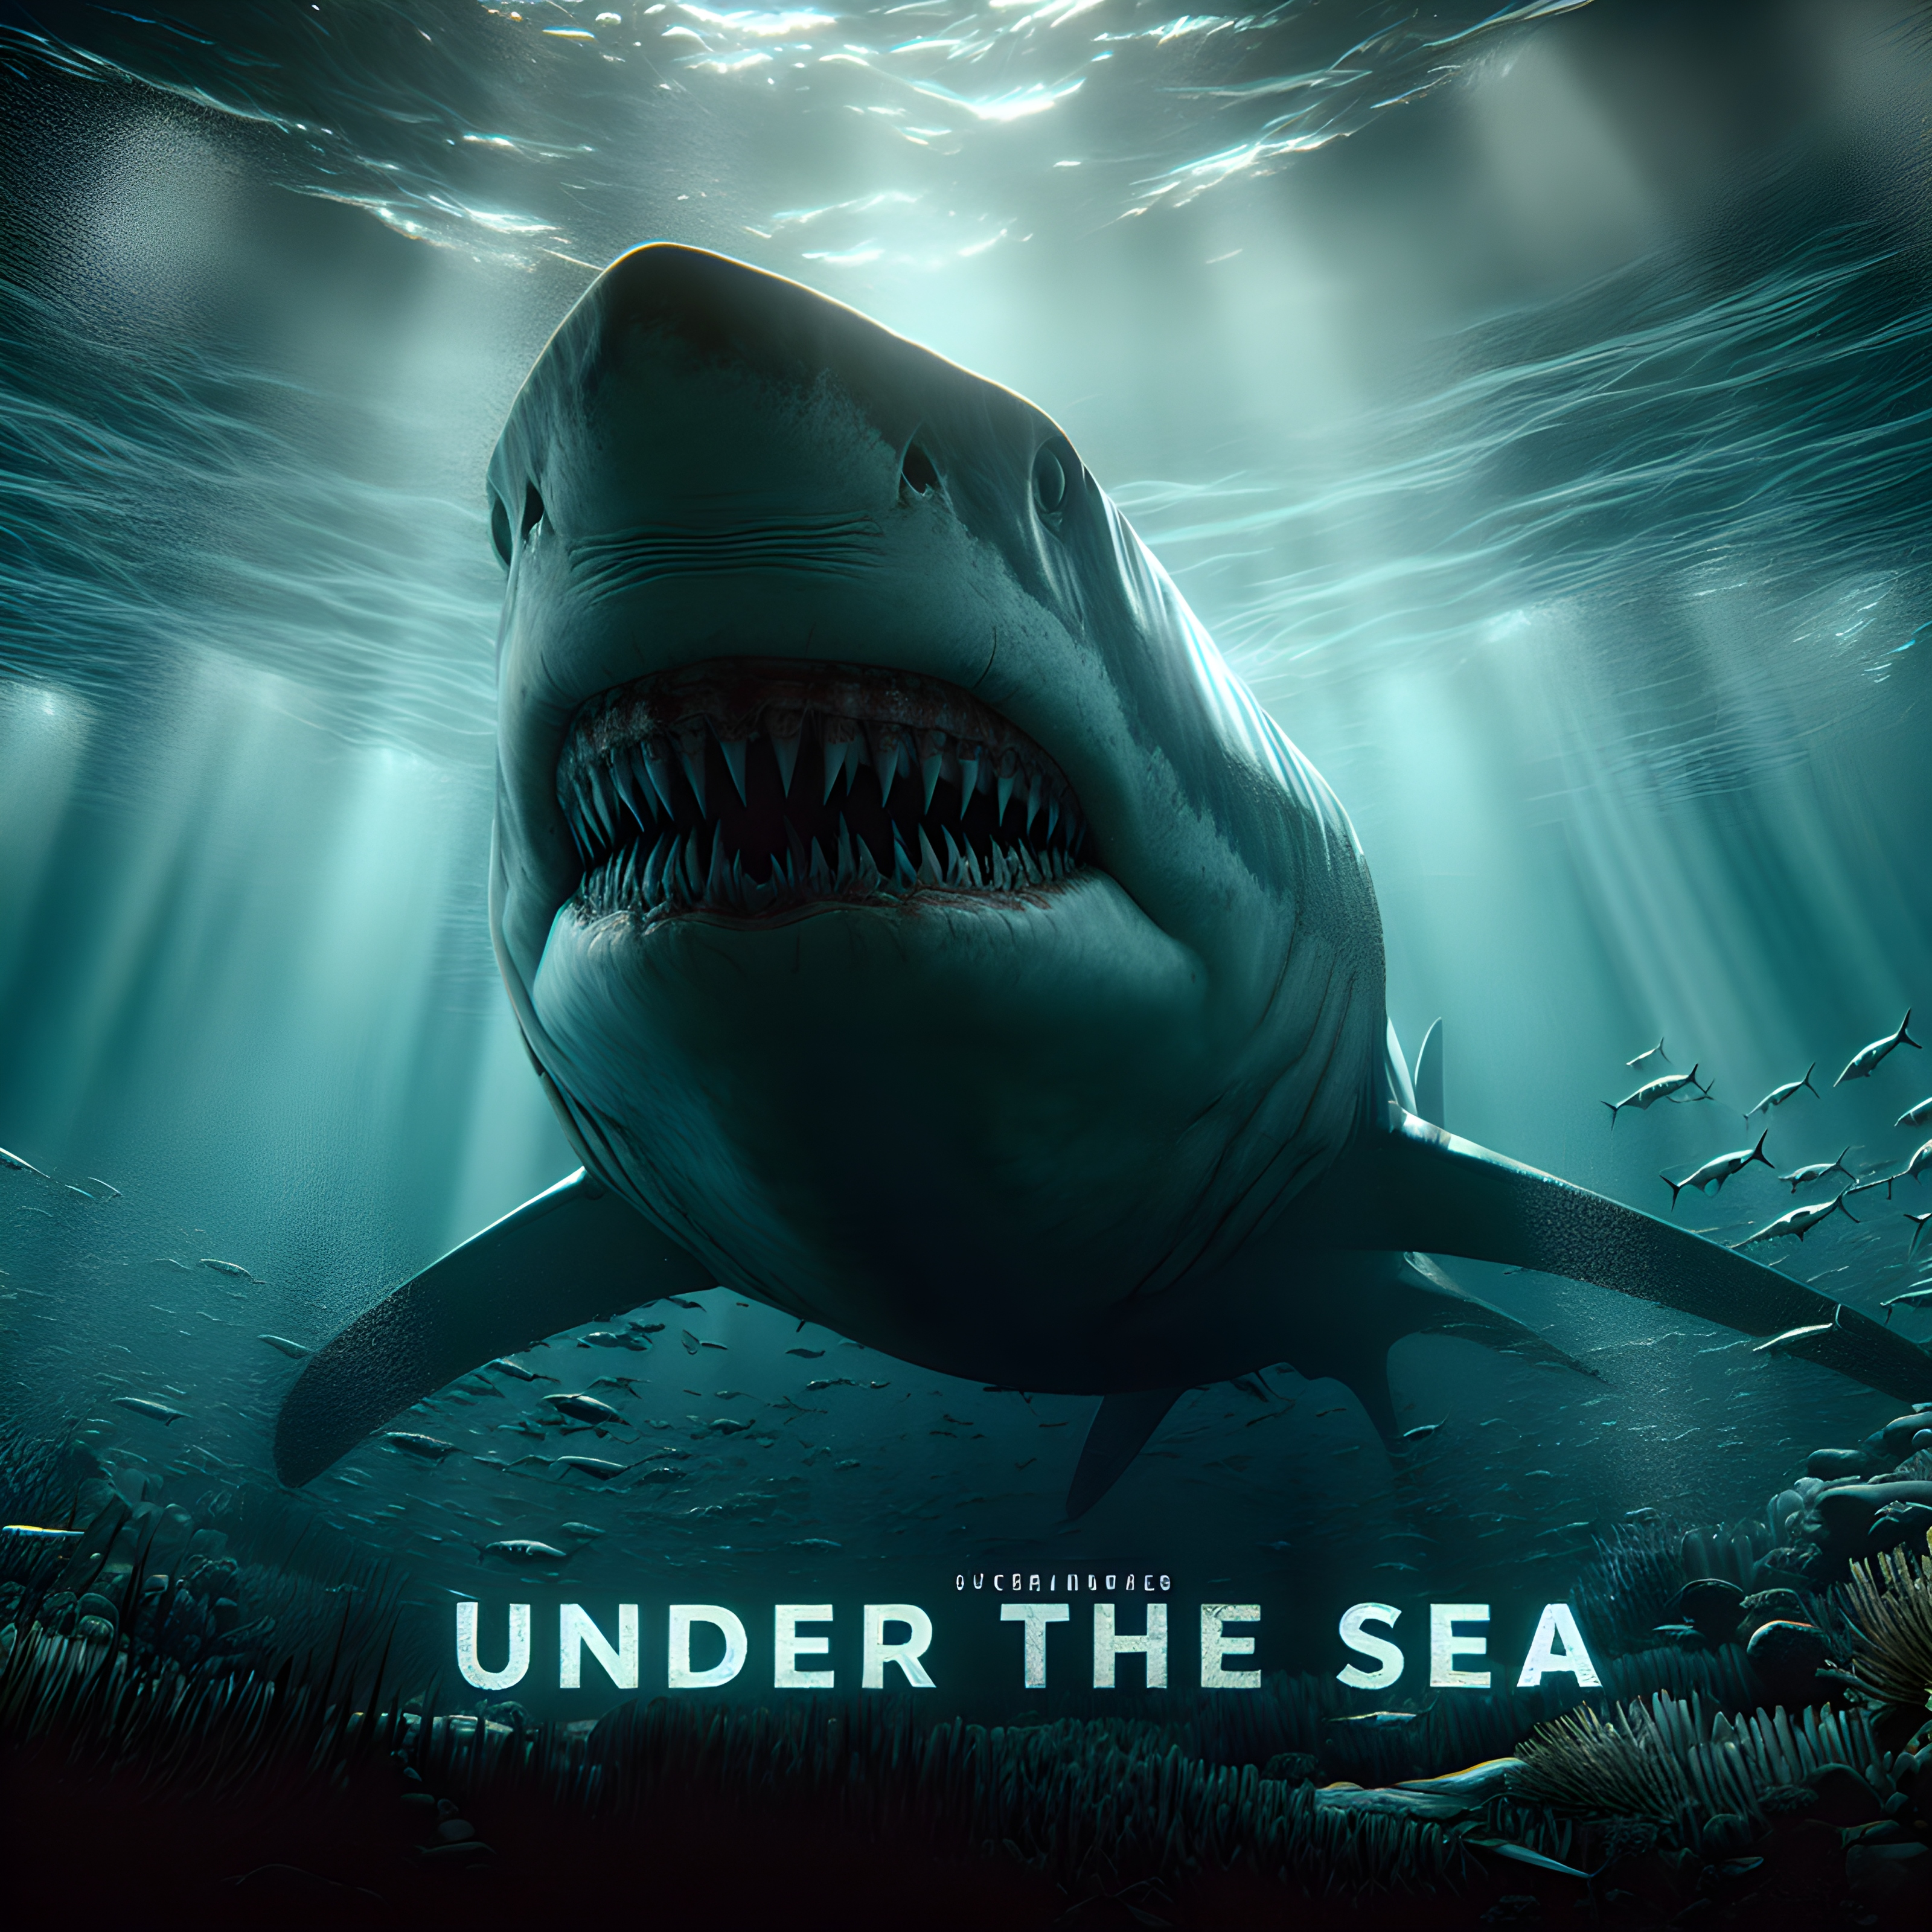 สร้างภาพ โปสเตอร์หนัง สำหรับหนัง แสดงข้อความ 'UNDER THE SEA' ฉลามยักษ์ดึกดำบรรพ์ใต้ทะเล ดูดุดัน น่ากลัว น่าเกรงขาม เป็นหนังแนวไซไฟ ในสไตล์ของ 47 Meters Down โปสเตอร์มืออาชีพ สมจริง